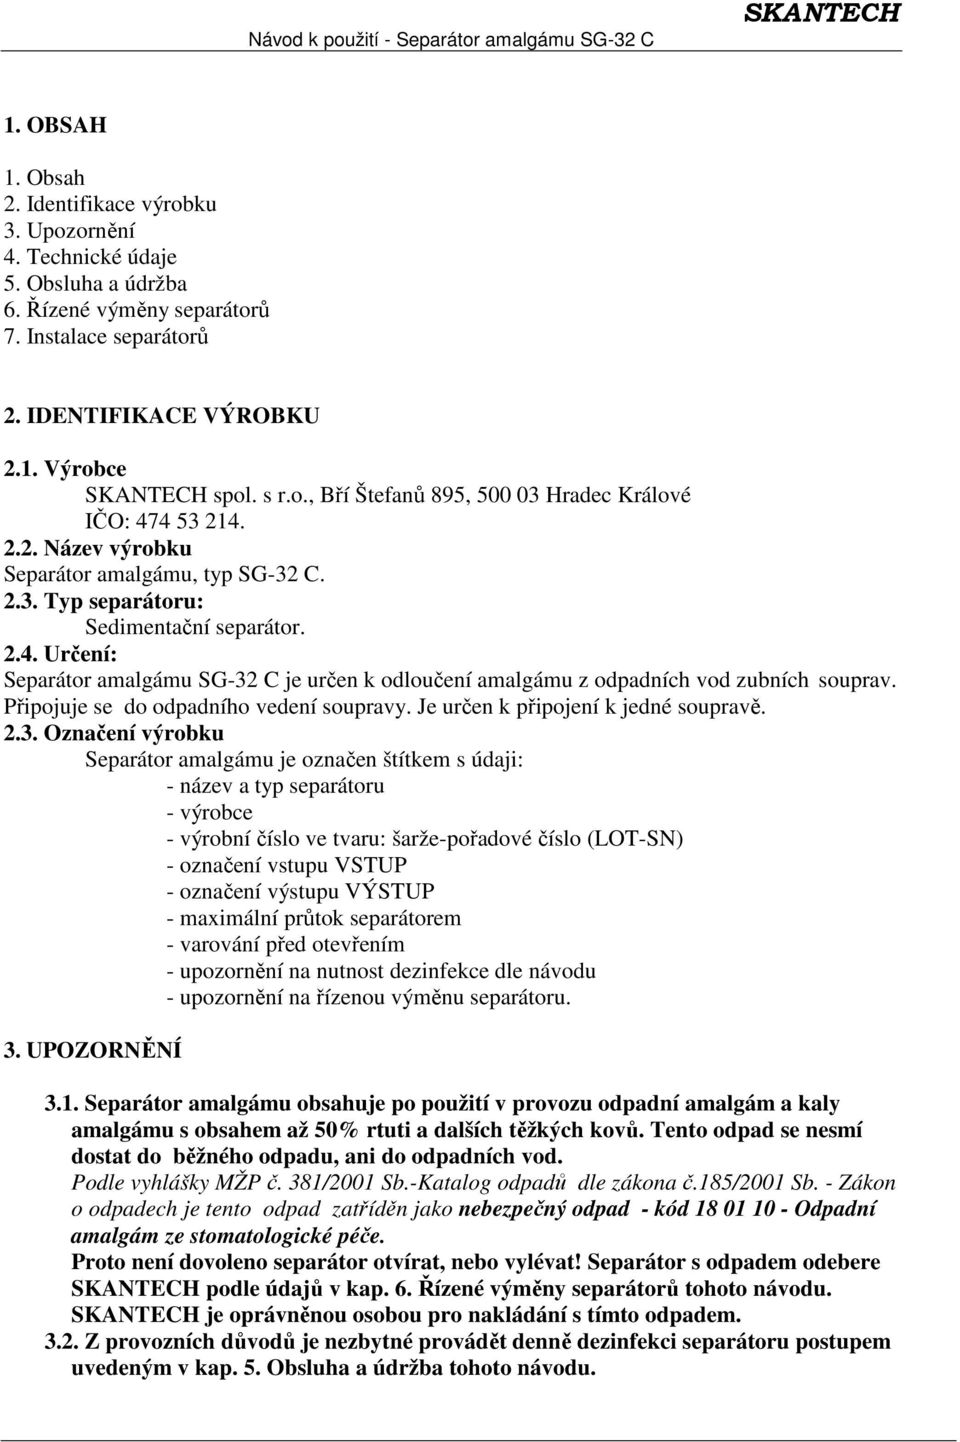 SEPARÁTOR AMALGÁMU SG-32 C NÁVOD K POUŽITÍ - PDF Free Download